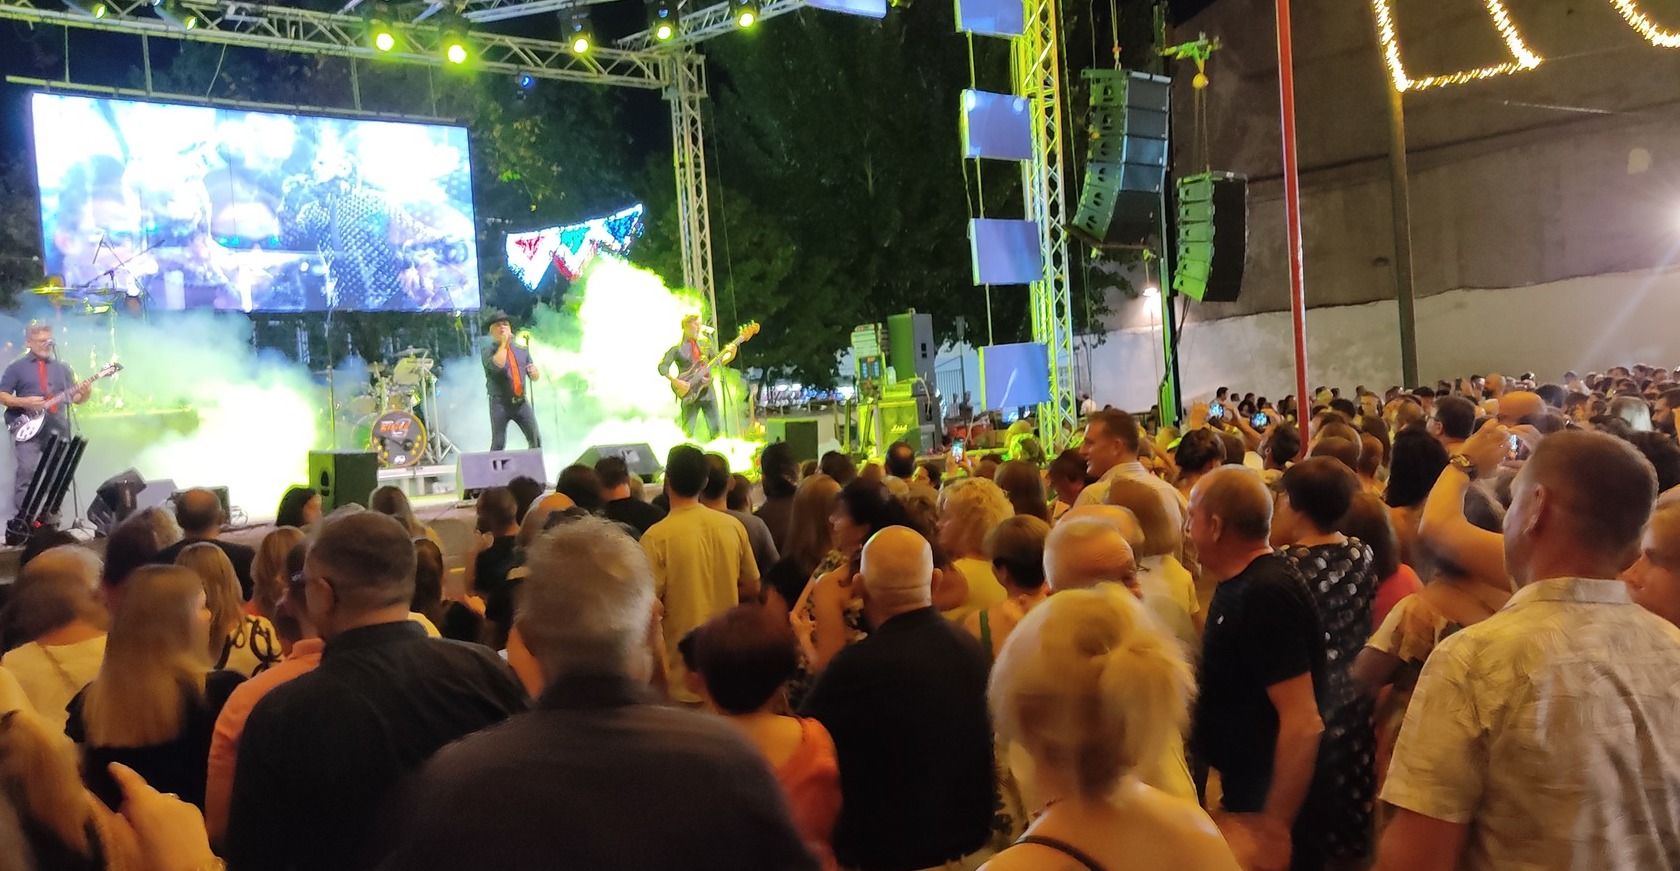 Un concierto durante las fiestas de Íllora, en las que ha muerto un joven tras una pelea.